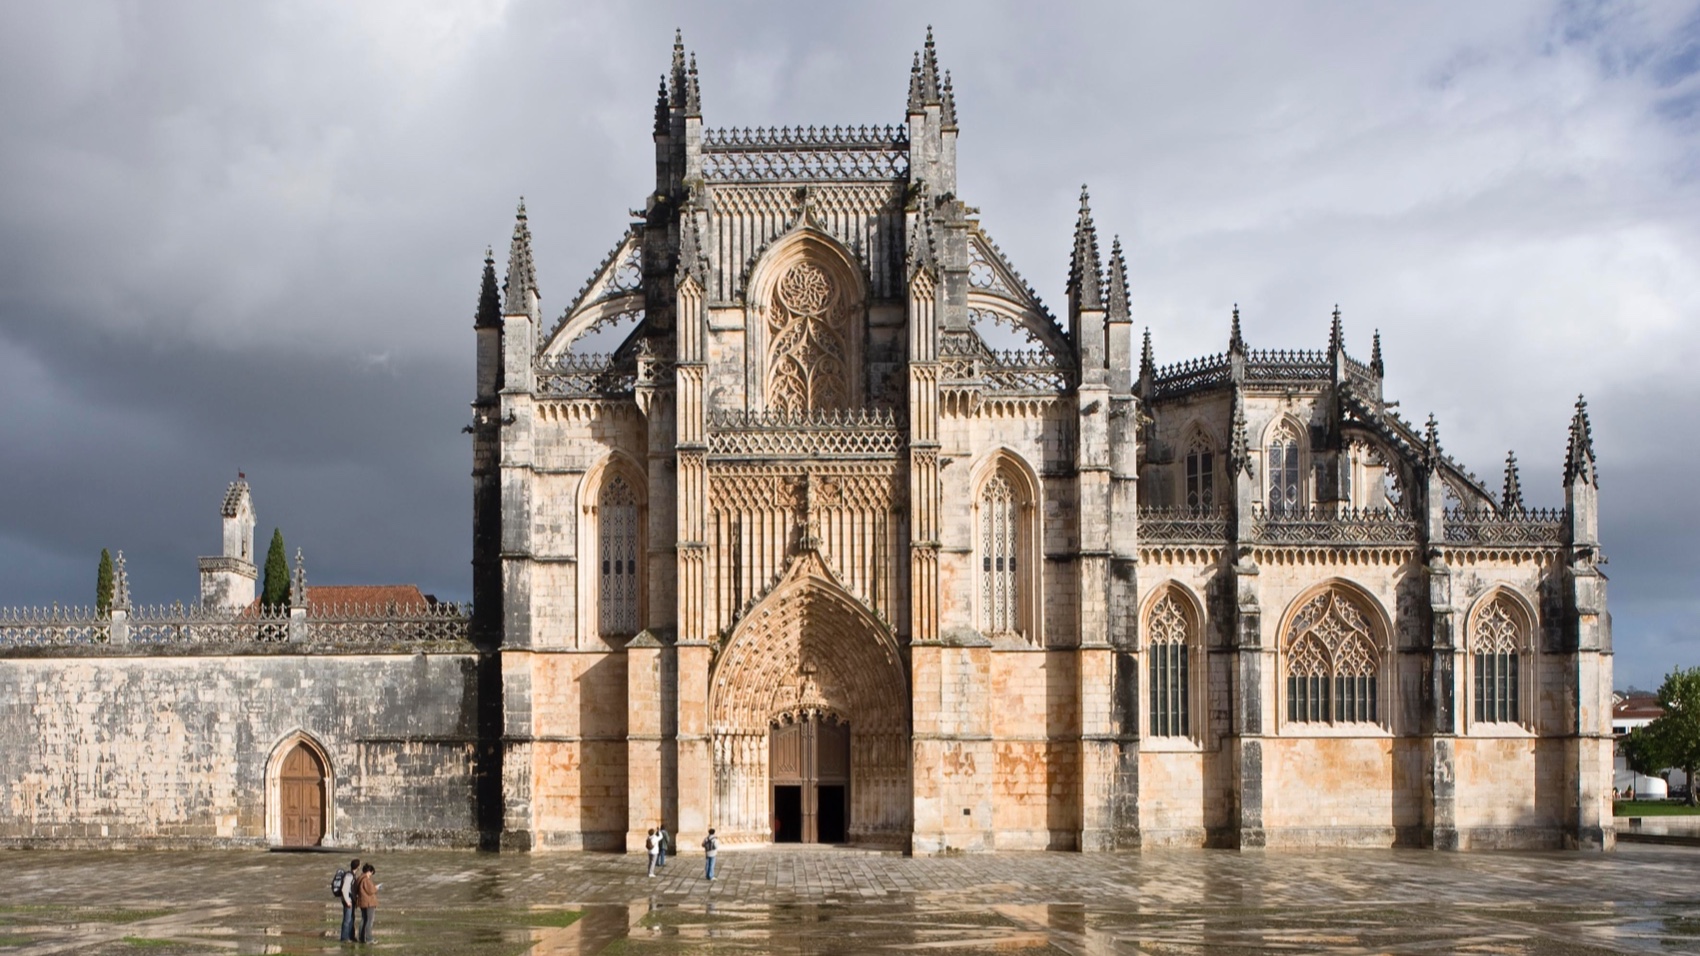 Turismo Centro de Portugal - Alcobaca Batalha Monasteries with Obidos Batalha 